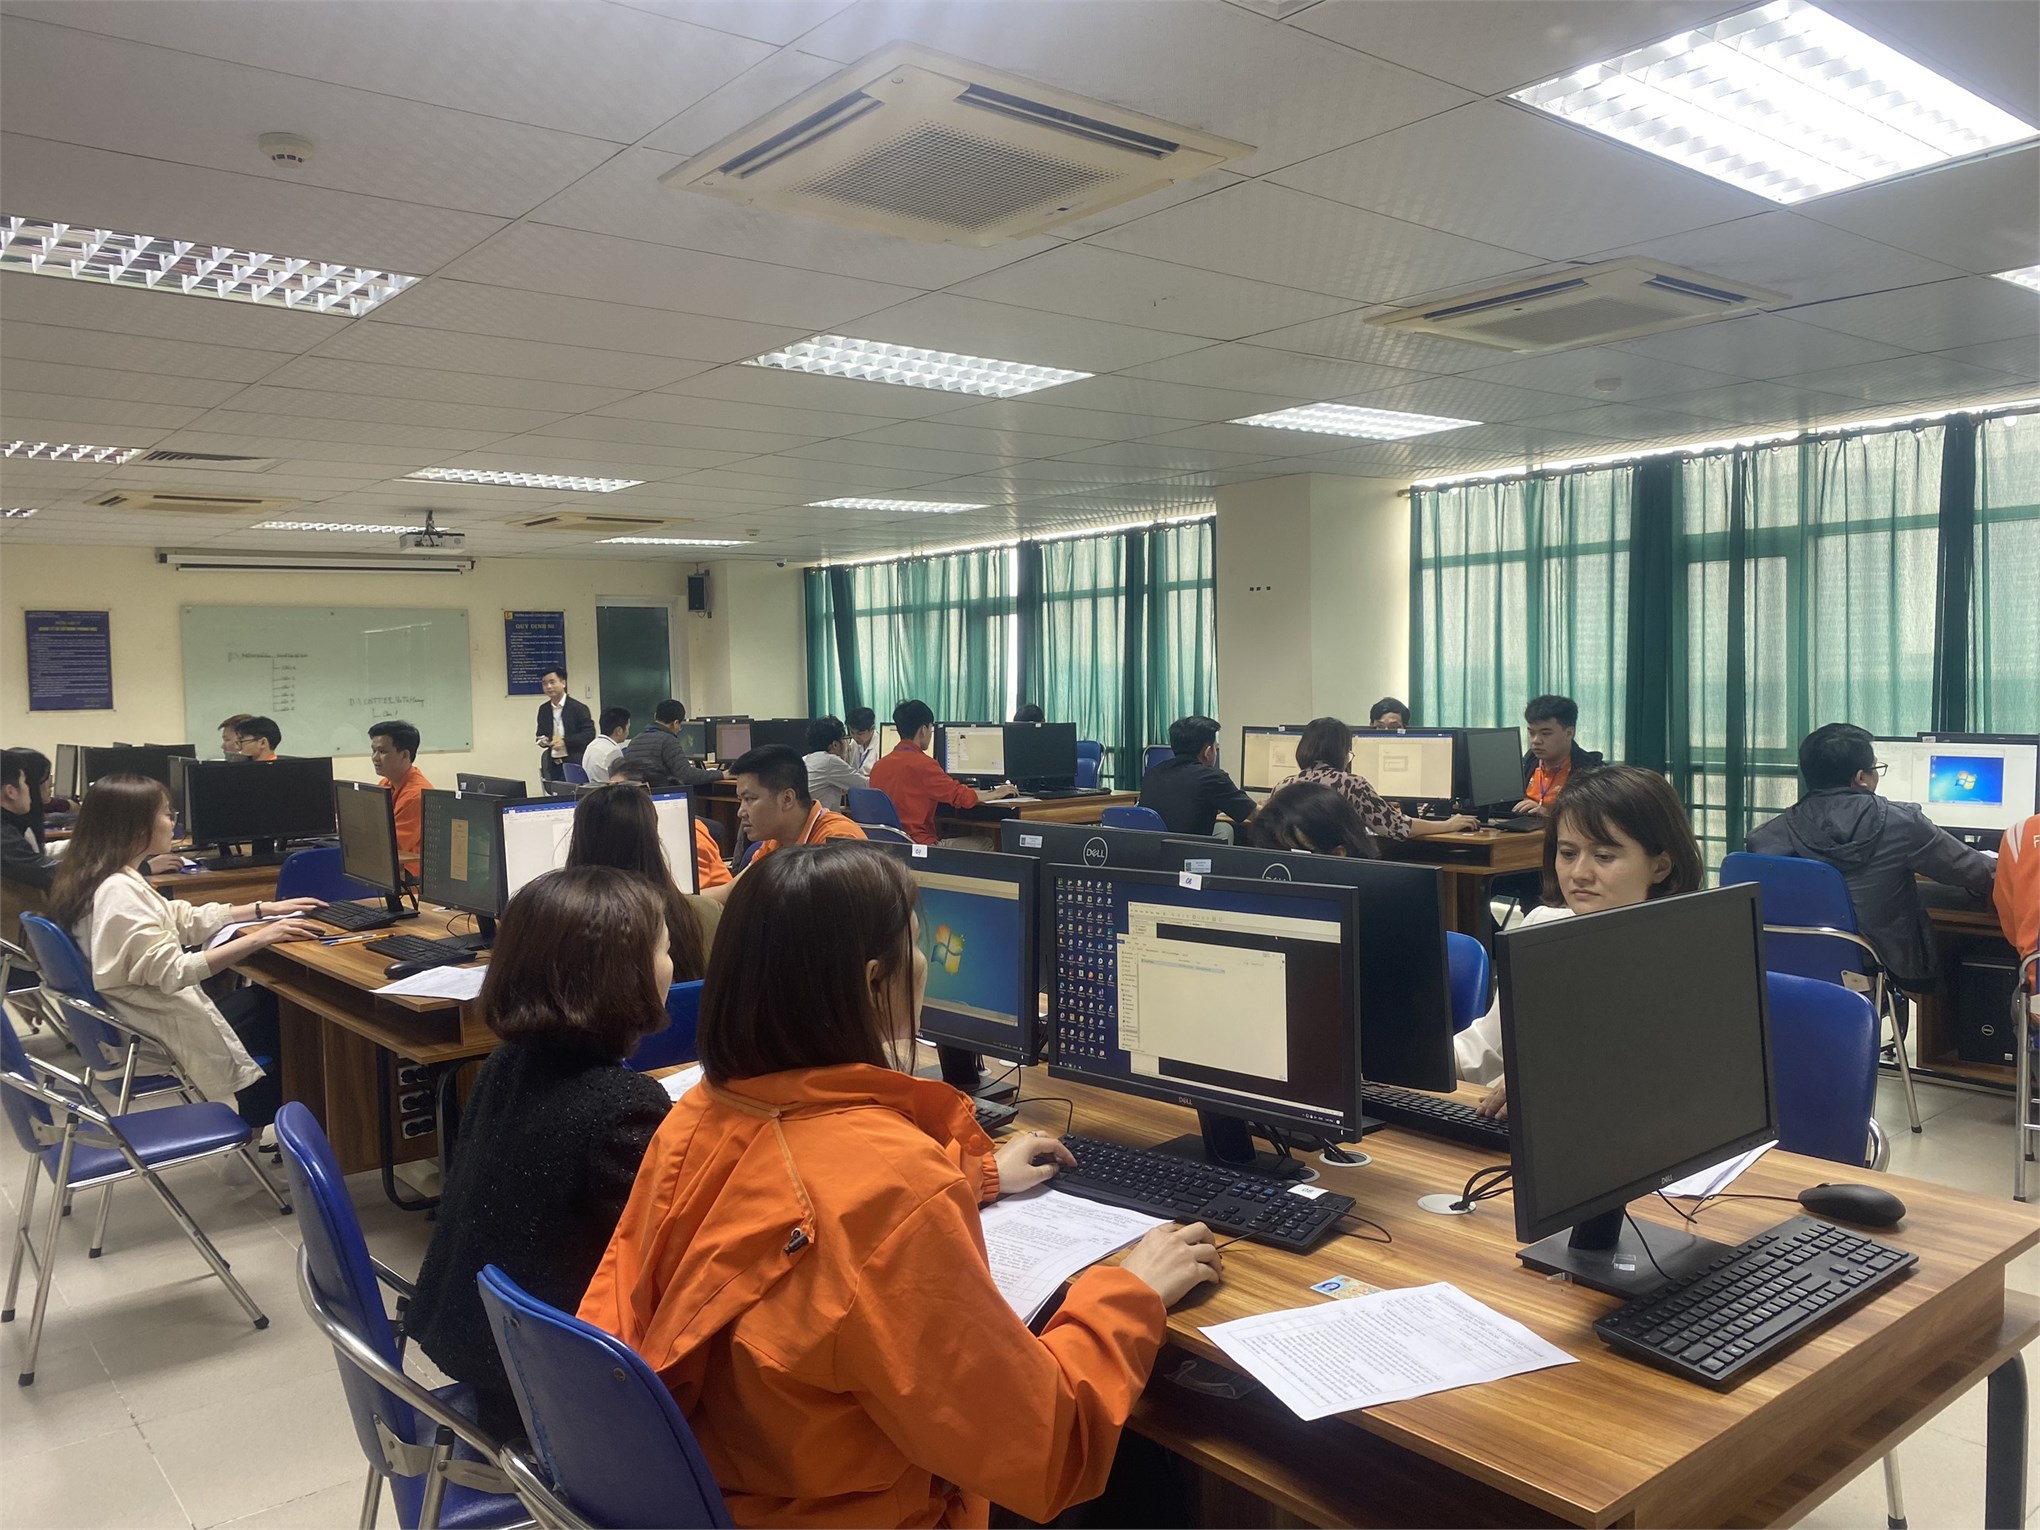 Trường Đại học Công nghiệp Hà Nội tổ chức kỳ Đánh giá kỹ năng Nghề Quốc gia nghề Công nghệ thông tin (Ứng dụng phần mềm) cho 86 thí sinh vào tháng 3/2023